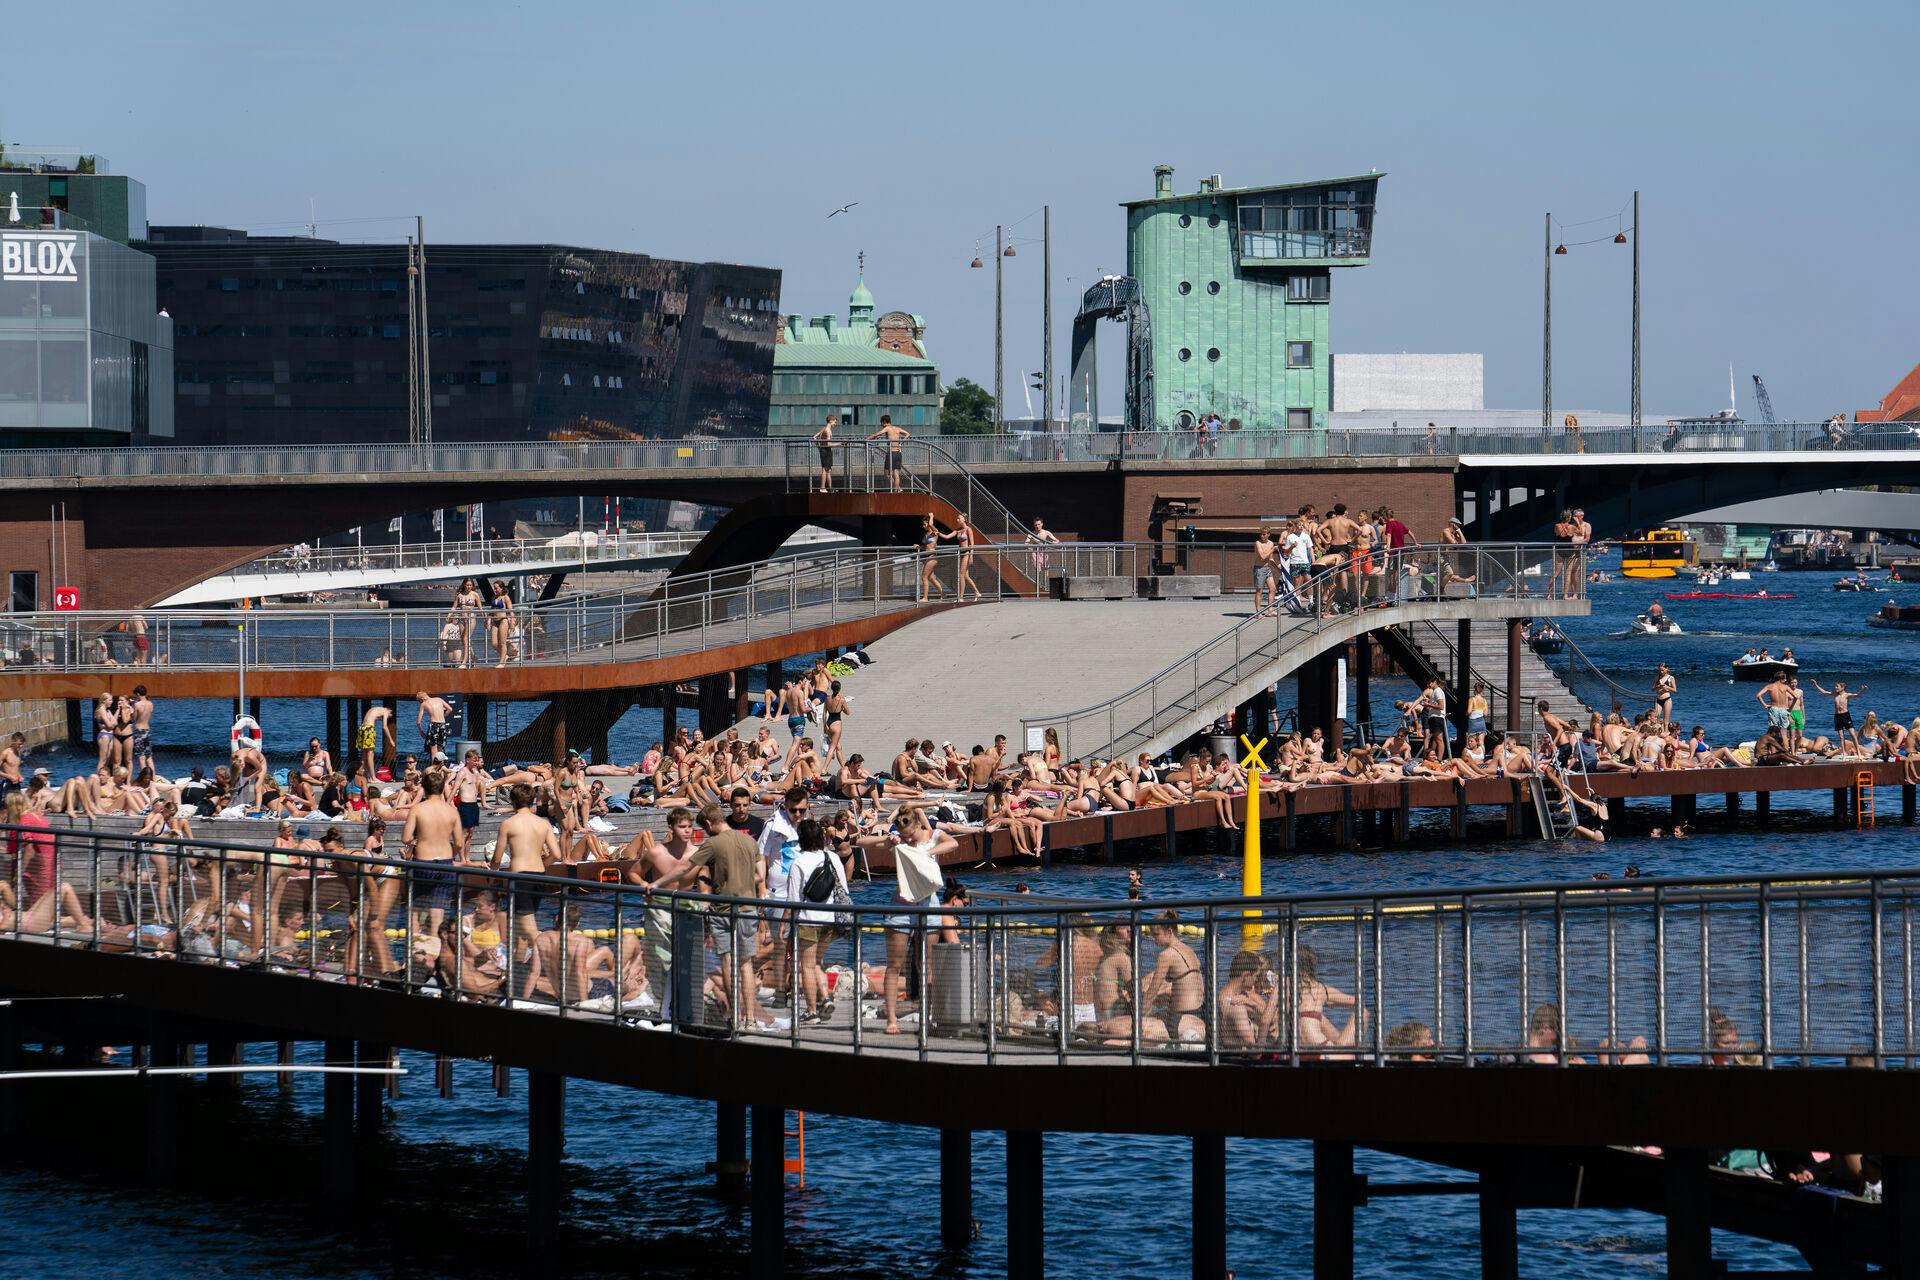 Nu bliver det varmt, og det betyder, at der kommer flere mennesker med musik på de offentlige områder i de dansker byer.